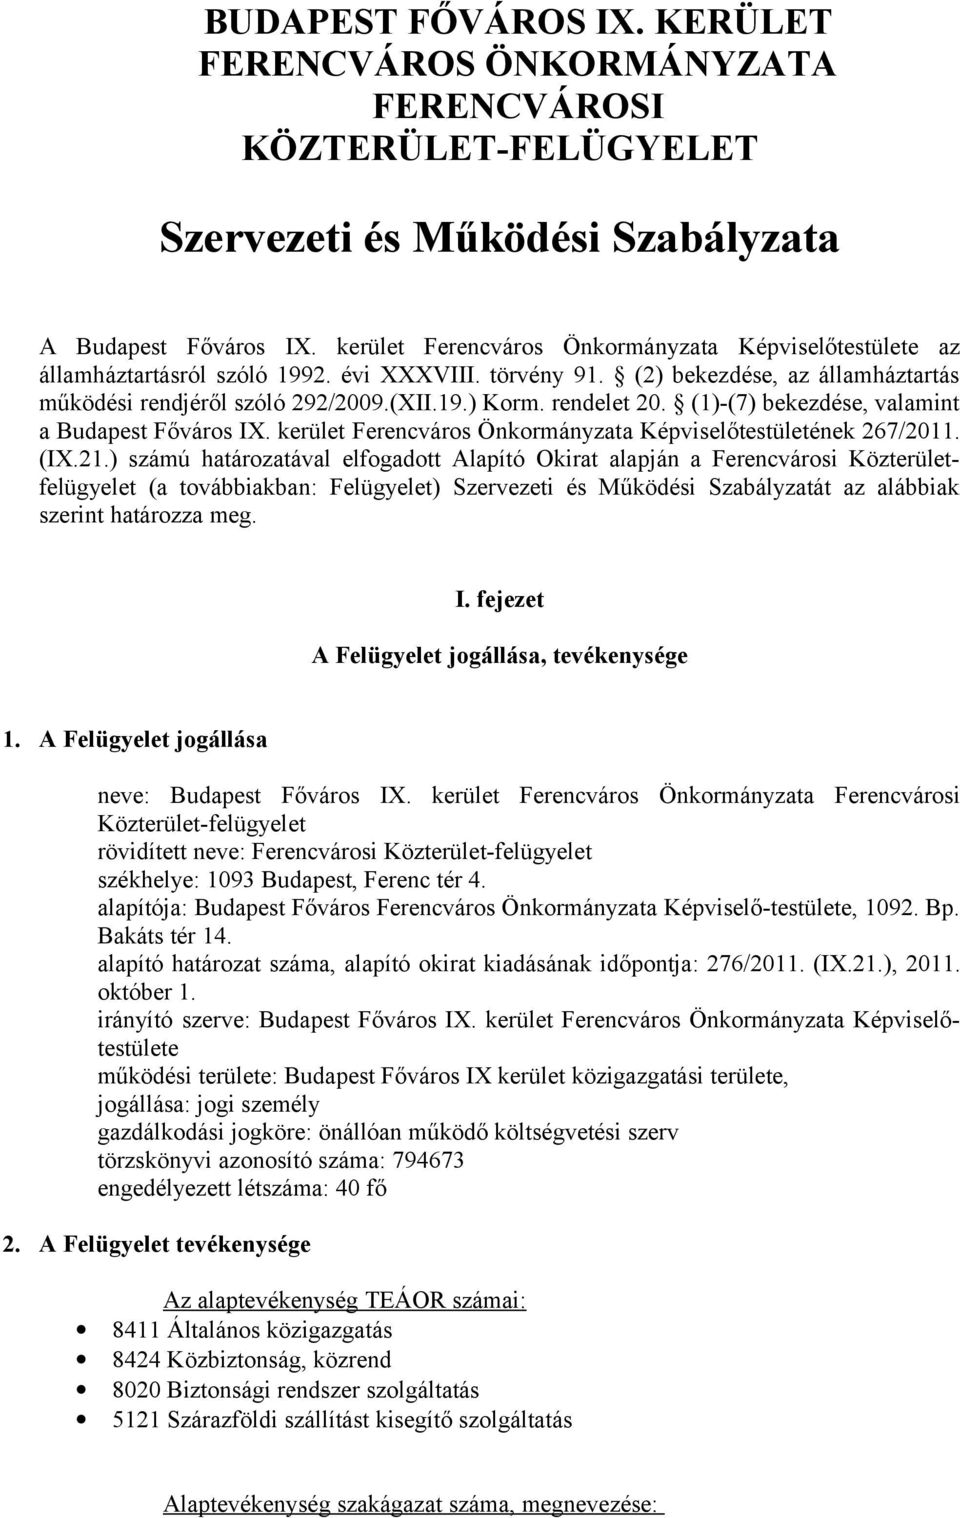 rendelet 20. (1)-(7) bekezdése, valamint a Budapest Főváros I. kerület Ferencváros Önkormányzata Képviselőtestületének 267/2011. (I.21.